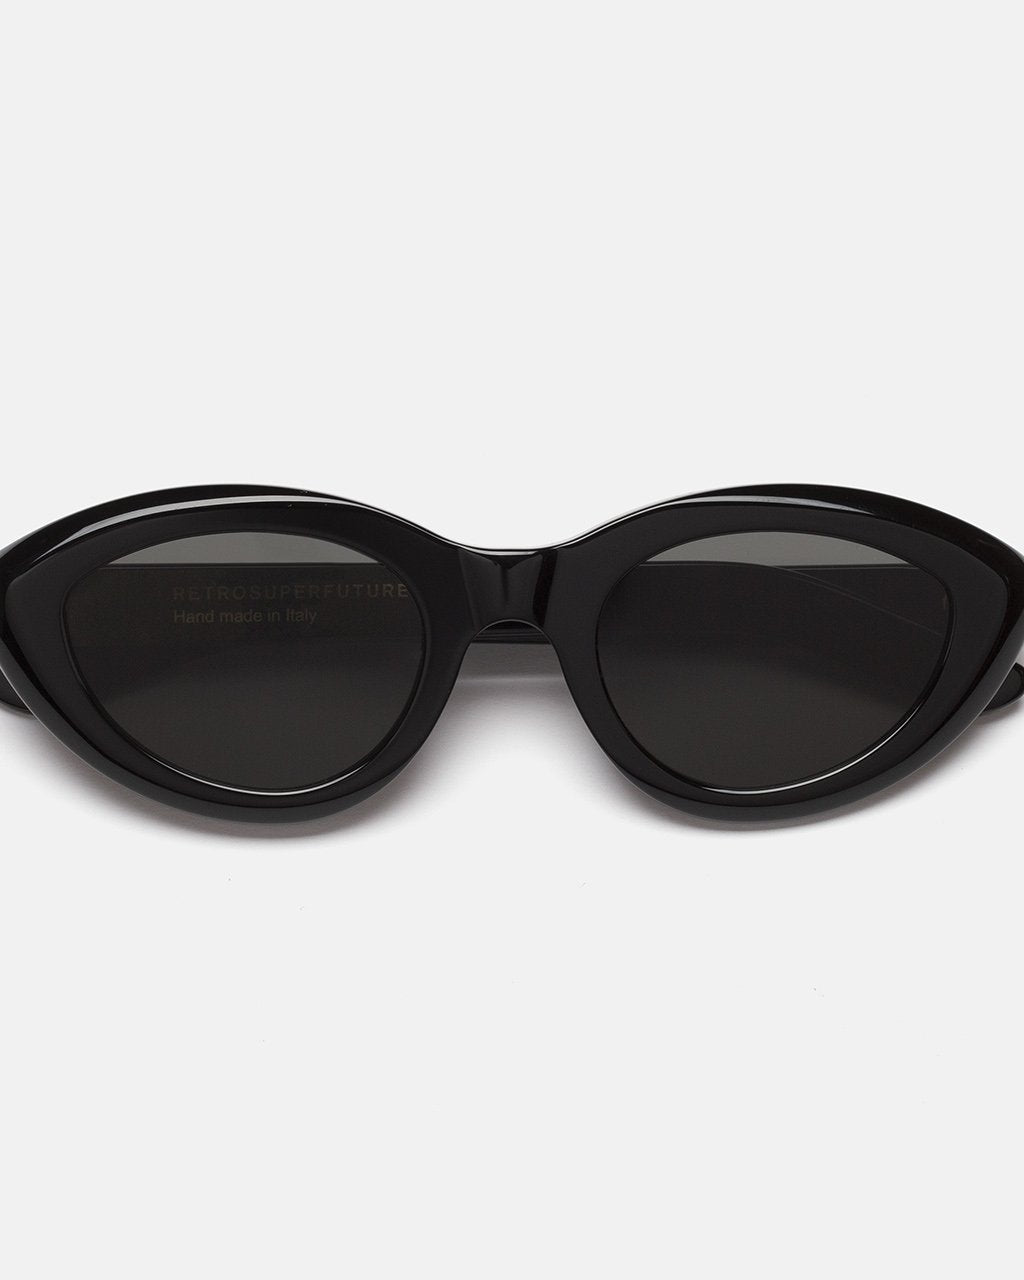 RETROSUPERFUTURE Cocca - Black sunglasses